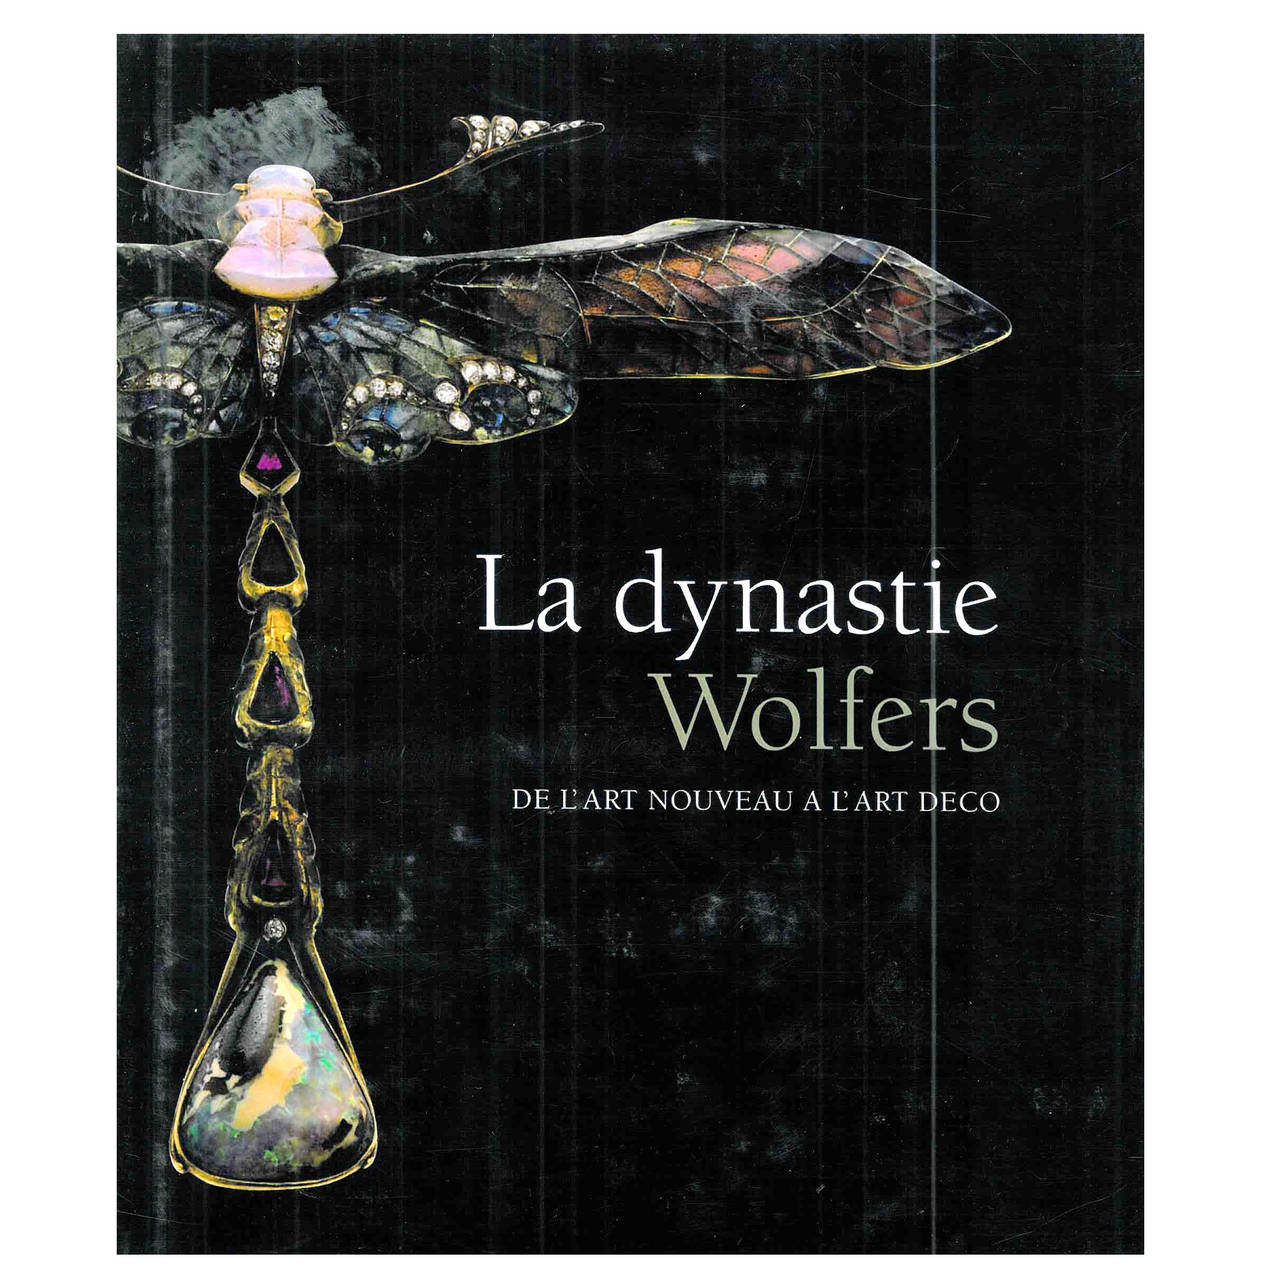 Book of La Dynastie Wolfers - de L'Art Nouveau a L'Art Deco